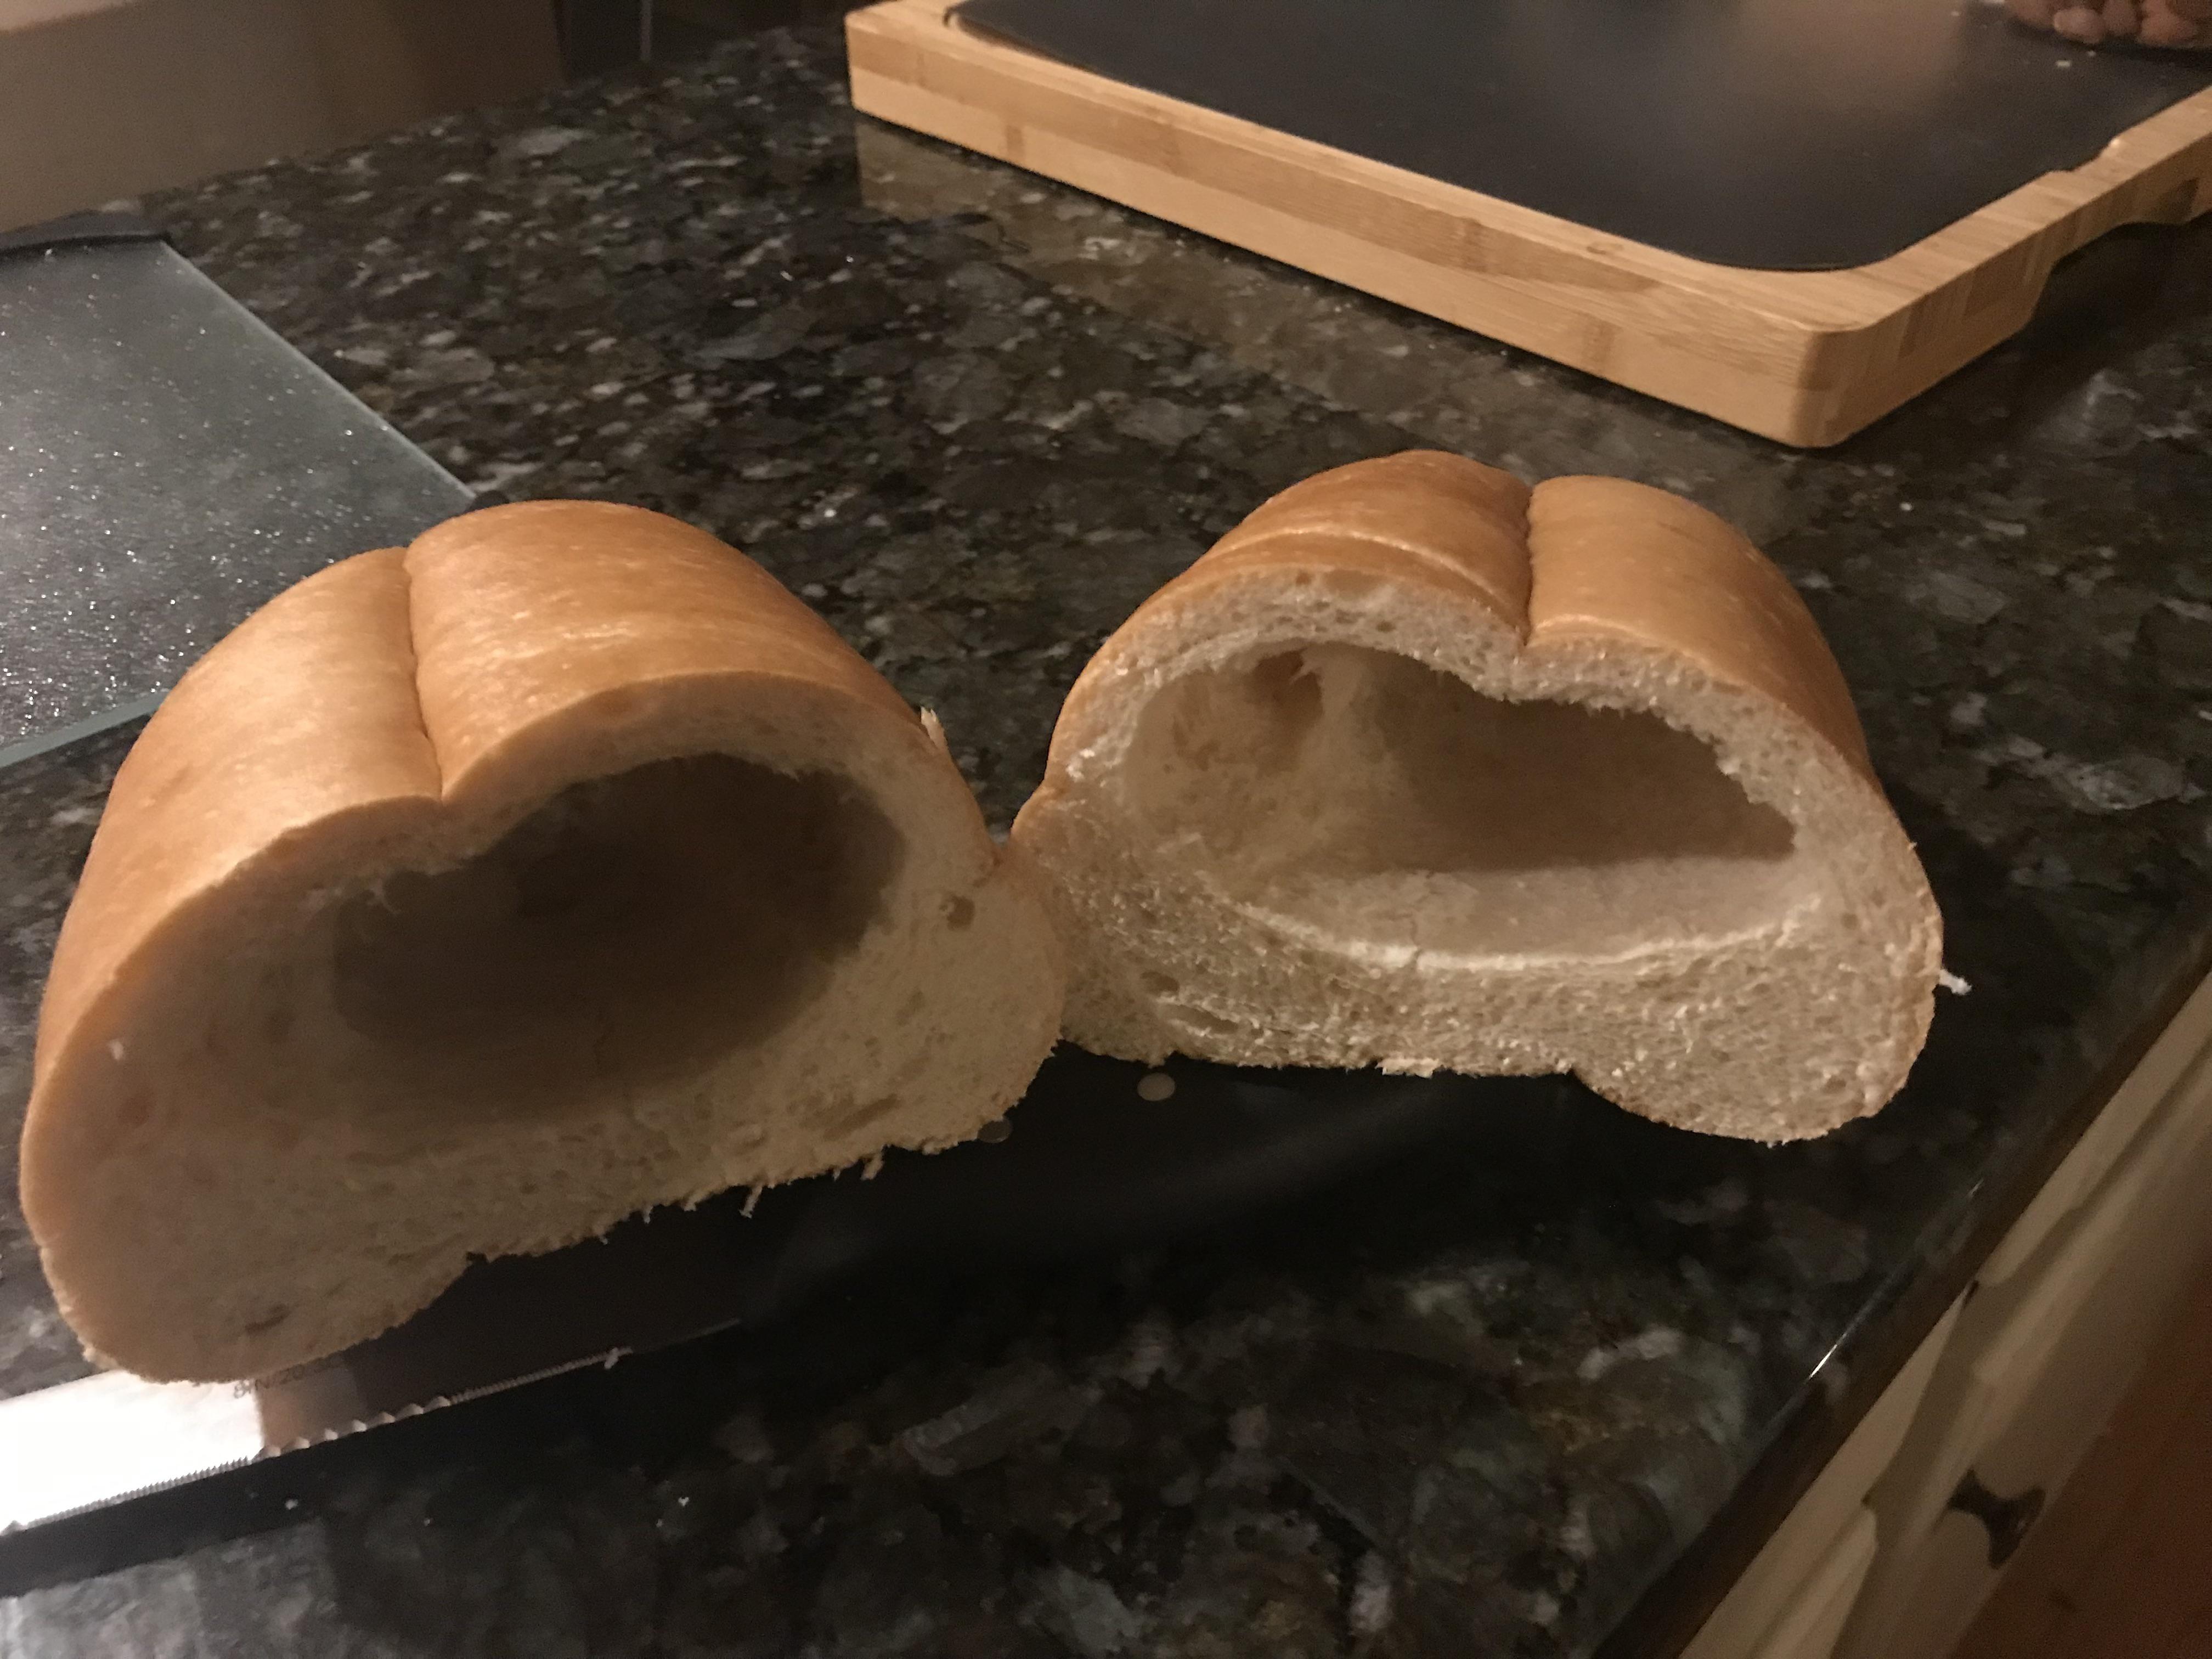 J'ai acheté du pain en solde. Maintenant, je sais pourquoi il était en solde.